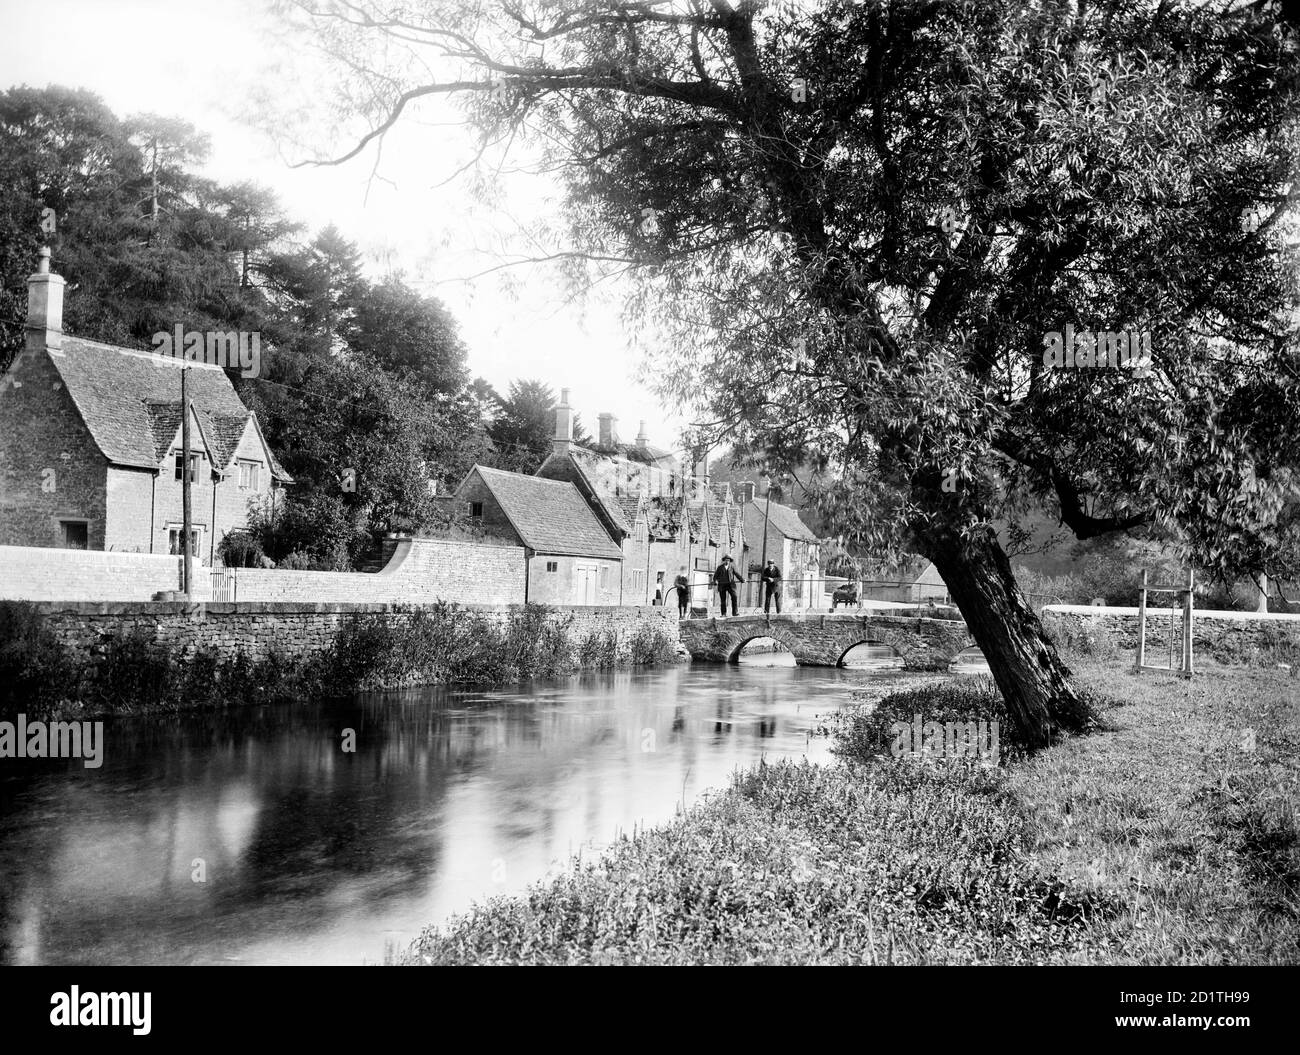 BIBURY, Gloucestershire. Blick entlang des Flusses in Richtung der Steinbrücke neben Arlington Row. Das Cotswold-Dorf Bibury wurde von William Morris als das schönste Dorf Englands bezeichnet. Fotografiert 1906 von Henry Taunt. Stockfoto